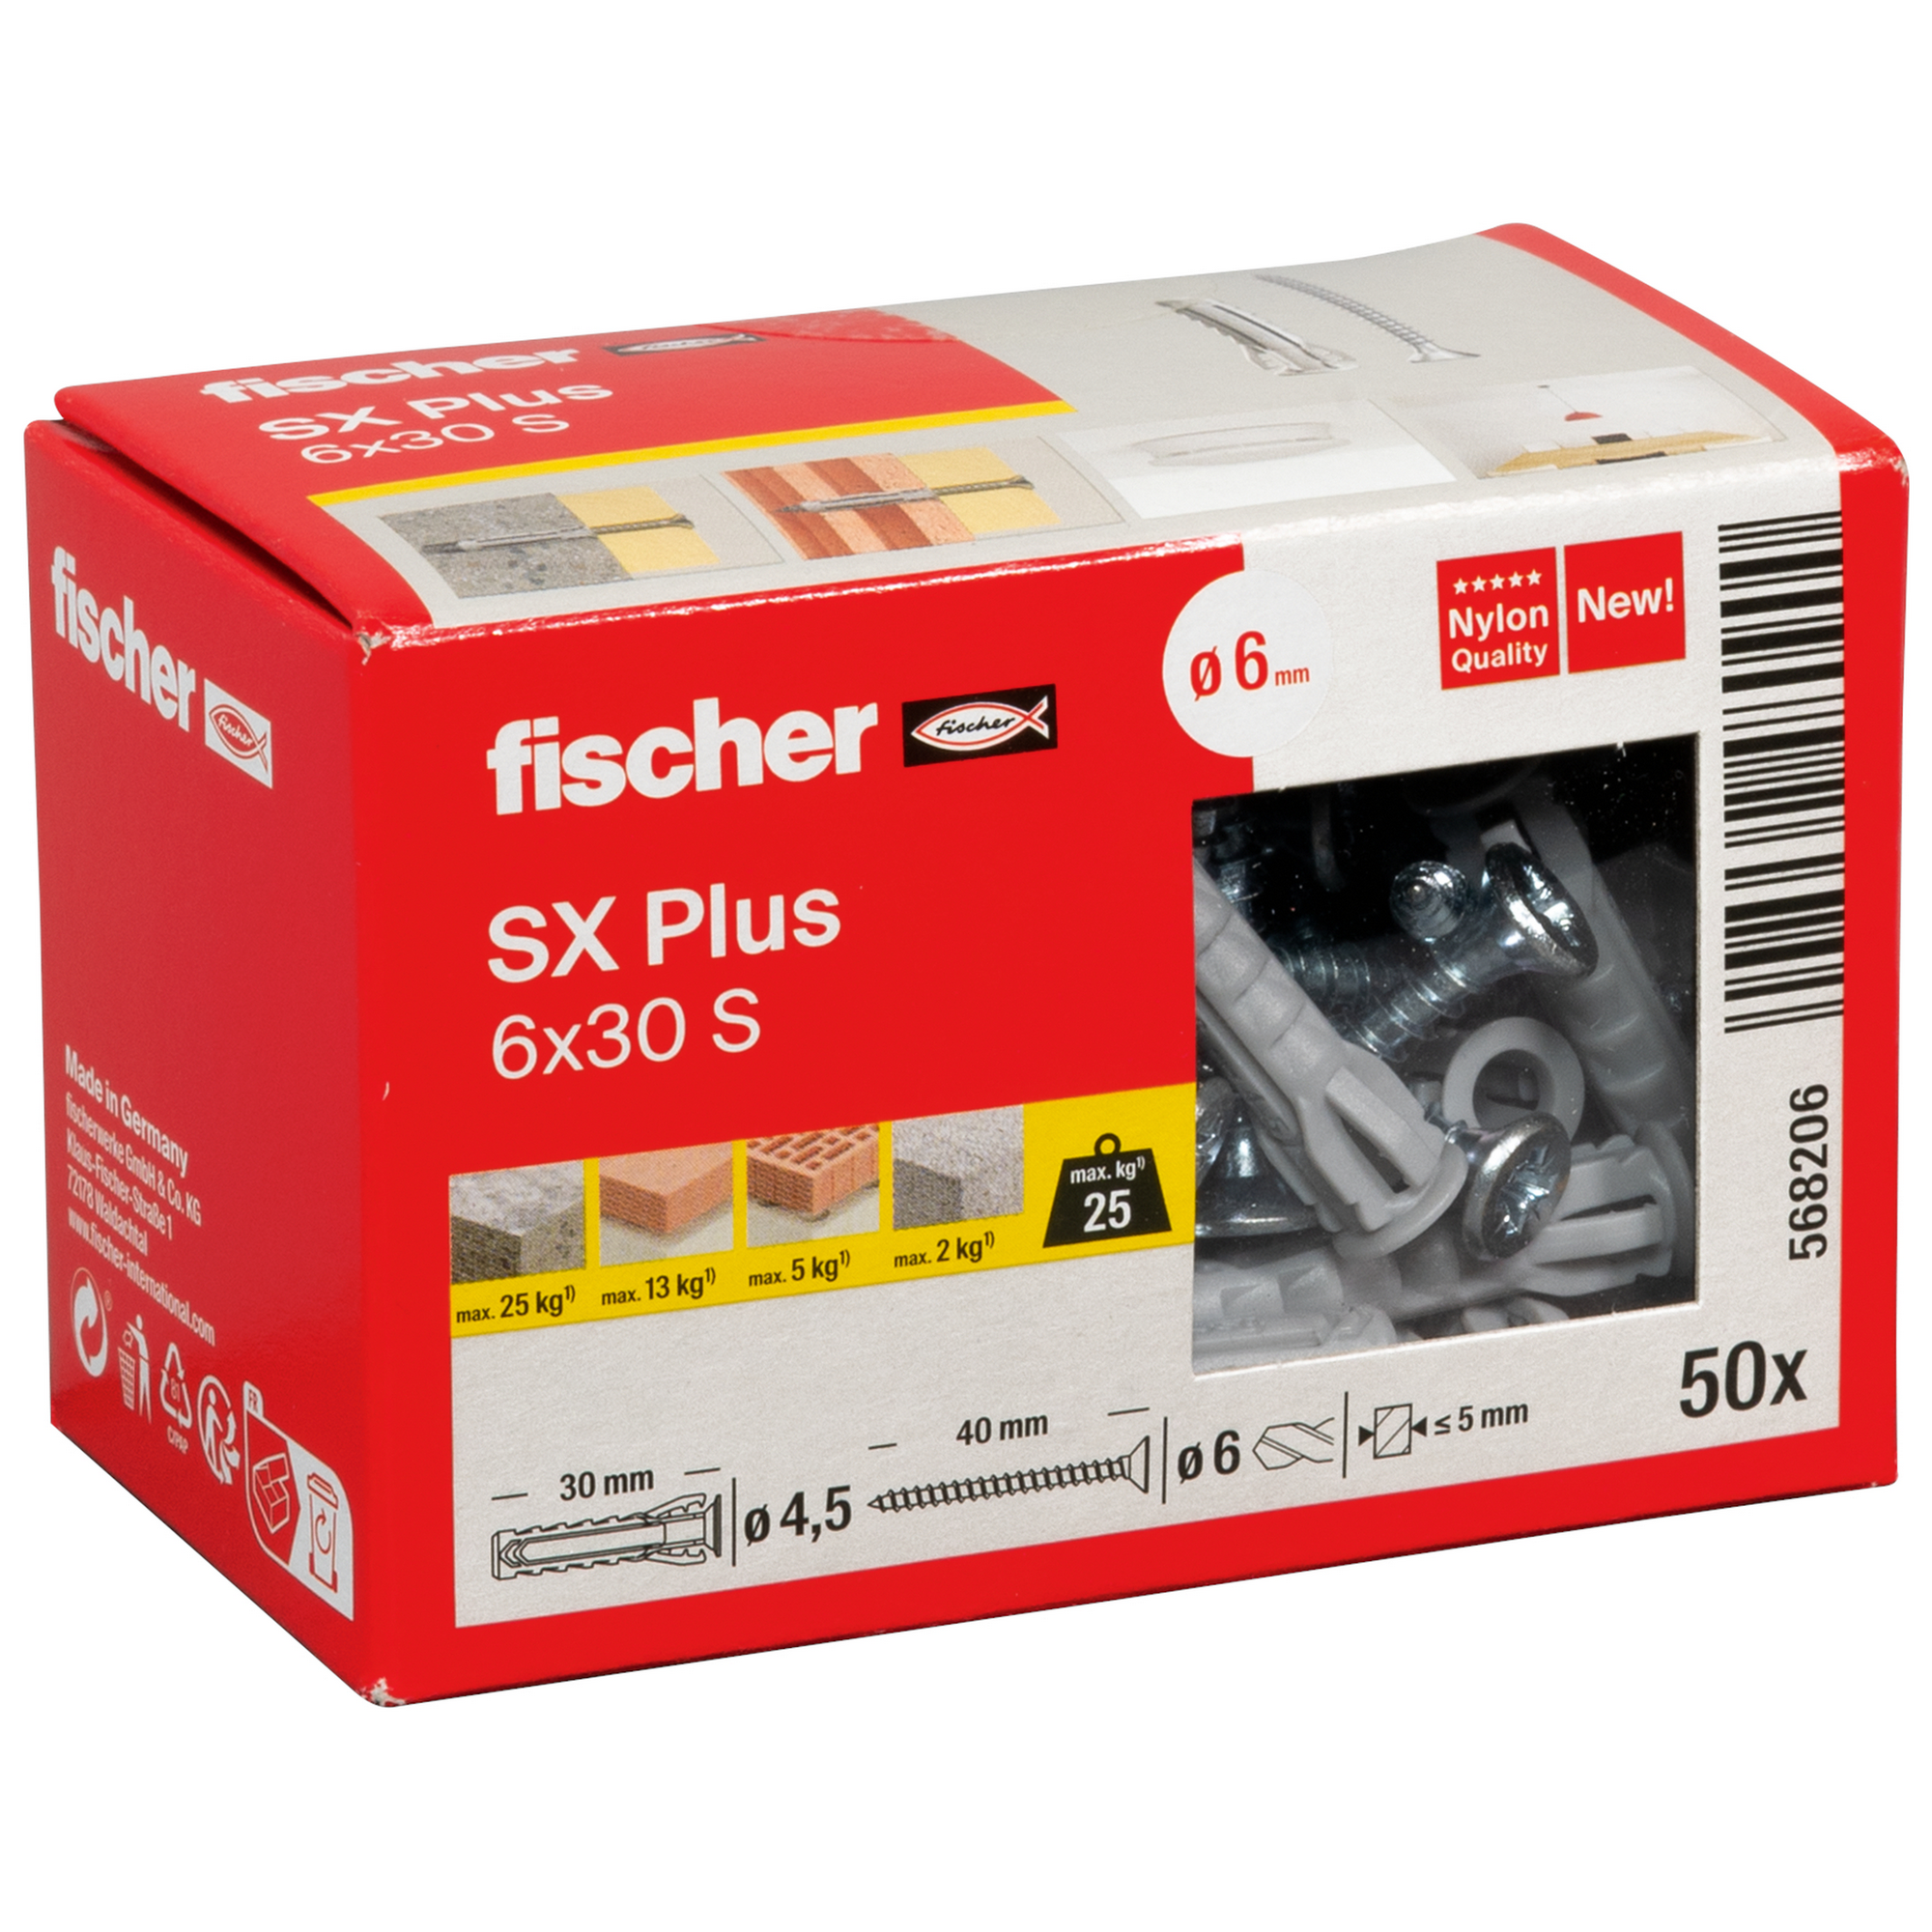 Spreizdübel-Set 'SX Plus' Ø 6 x 30 mm S mit Schraube, 50-teilig + product picture